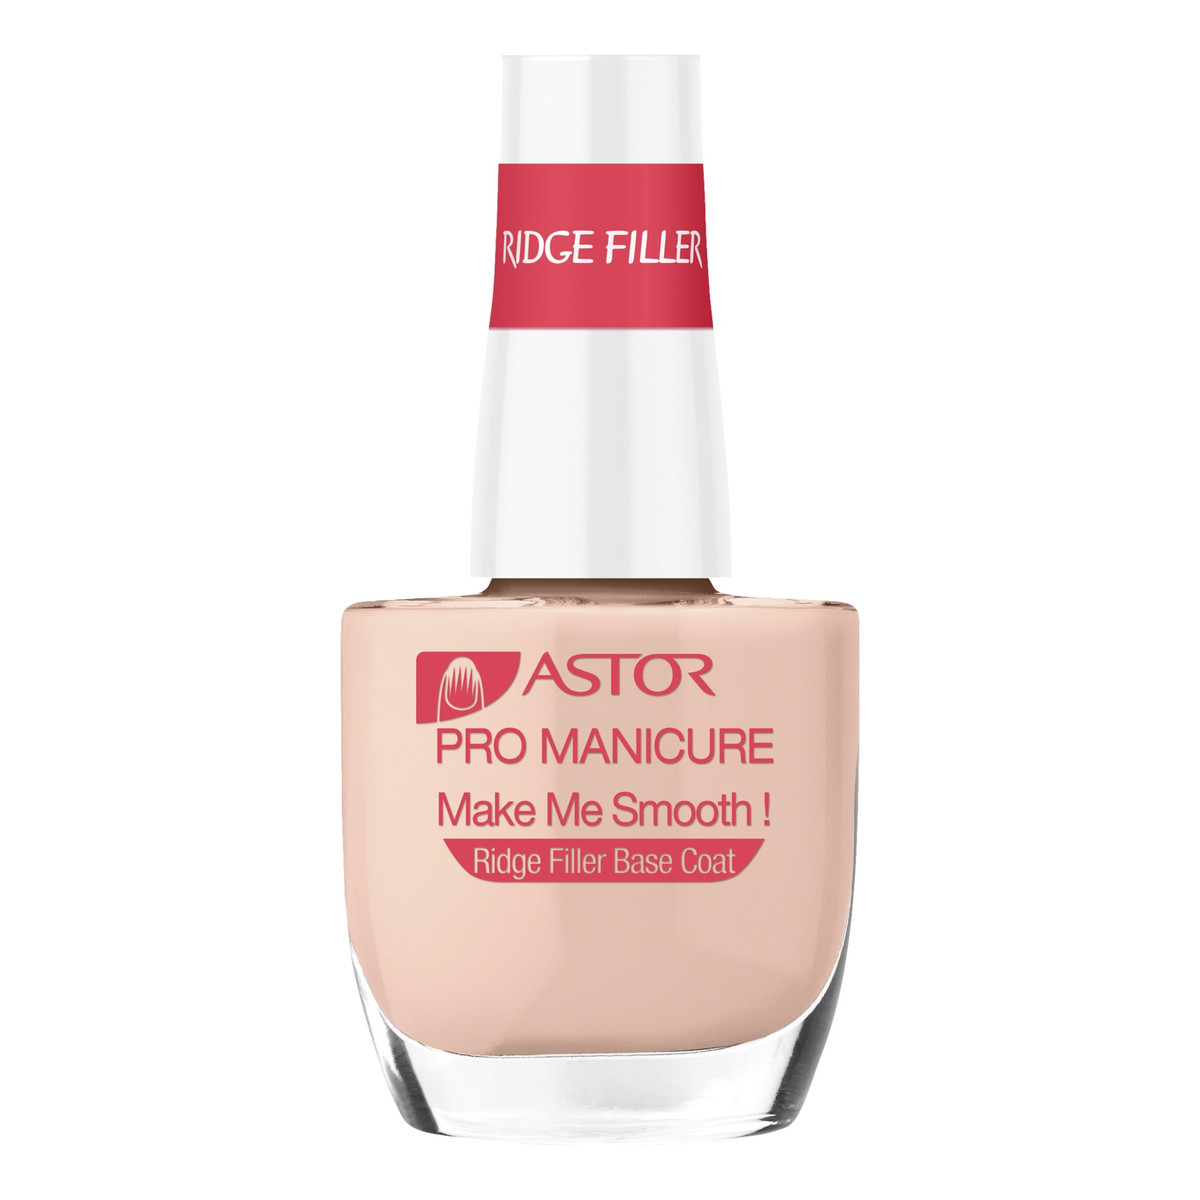 Astor Pro Manicure Make Me Smooth Odżywka wygładzająca paznokcie 12ml